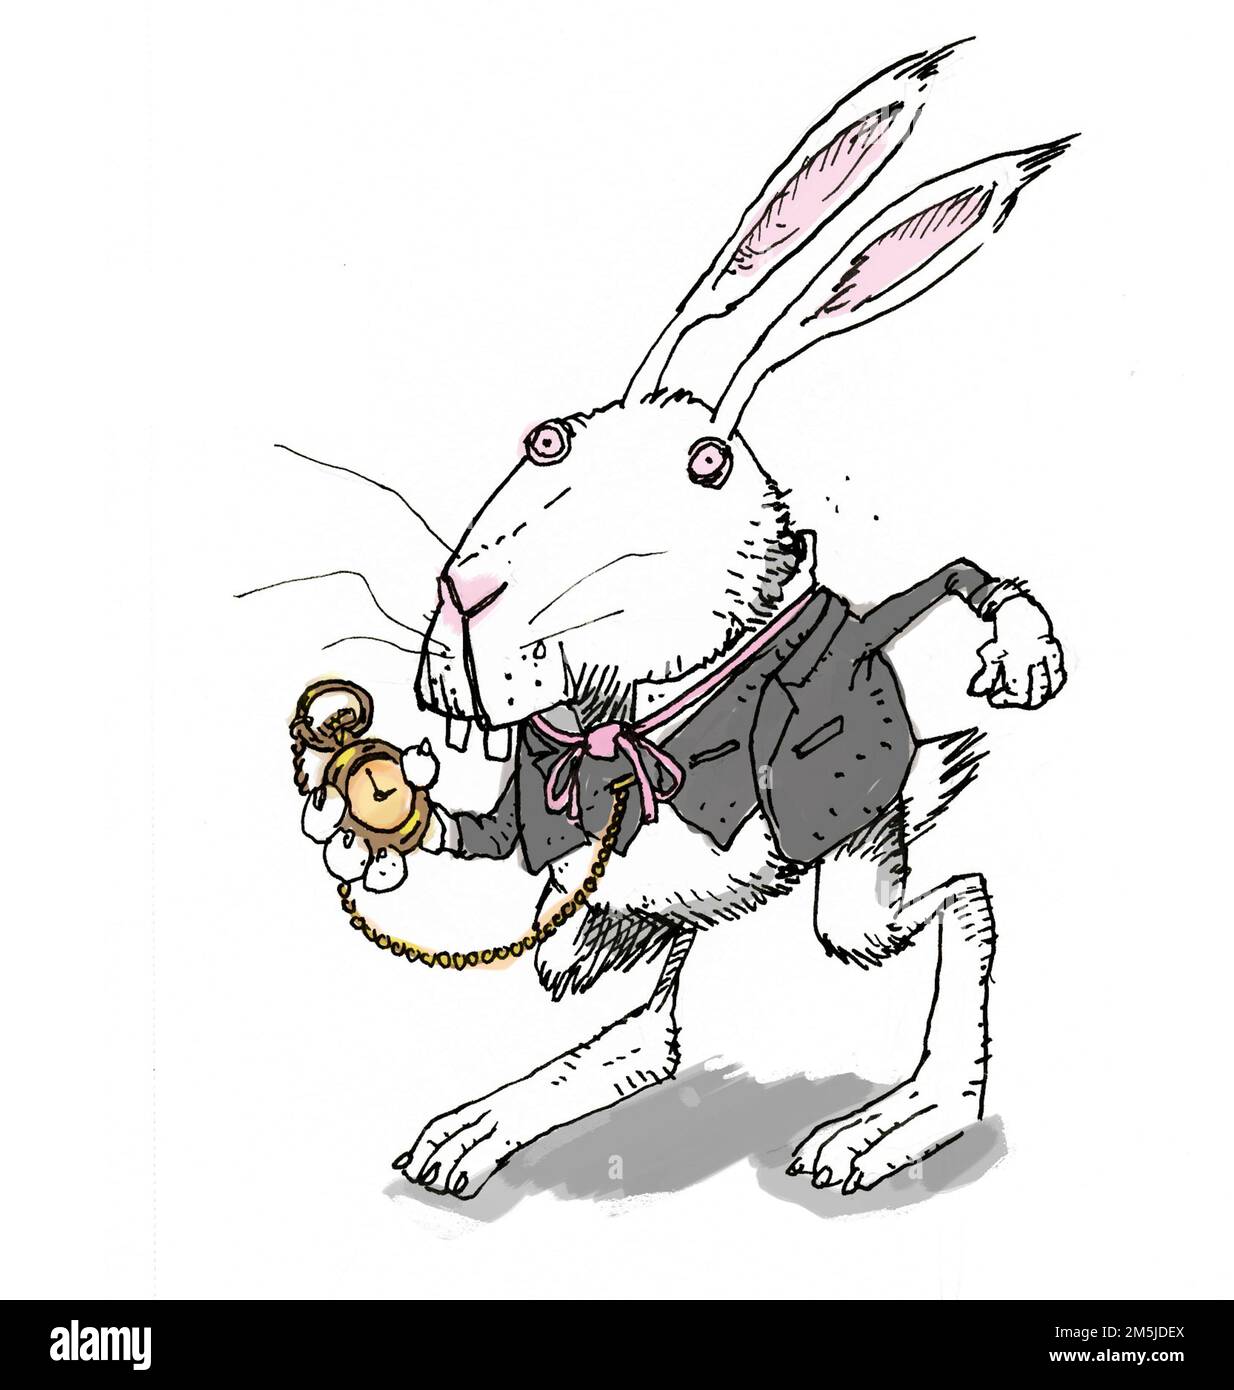 Illustration du personnage anthropomorphique fictif du lapin blanc qui exécute le livre de Lewis Carroll de 1865 Alice's Adventures in Wonderland Banque D'Images